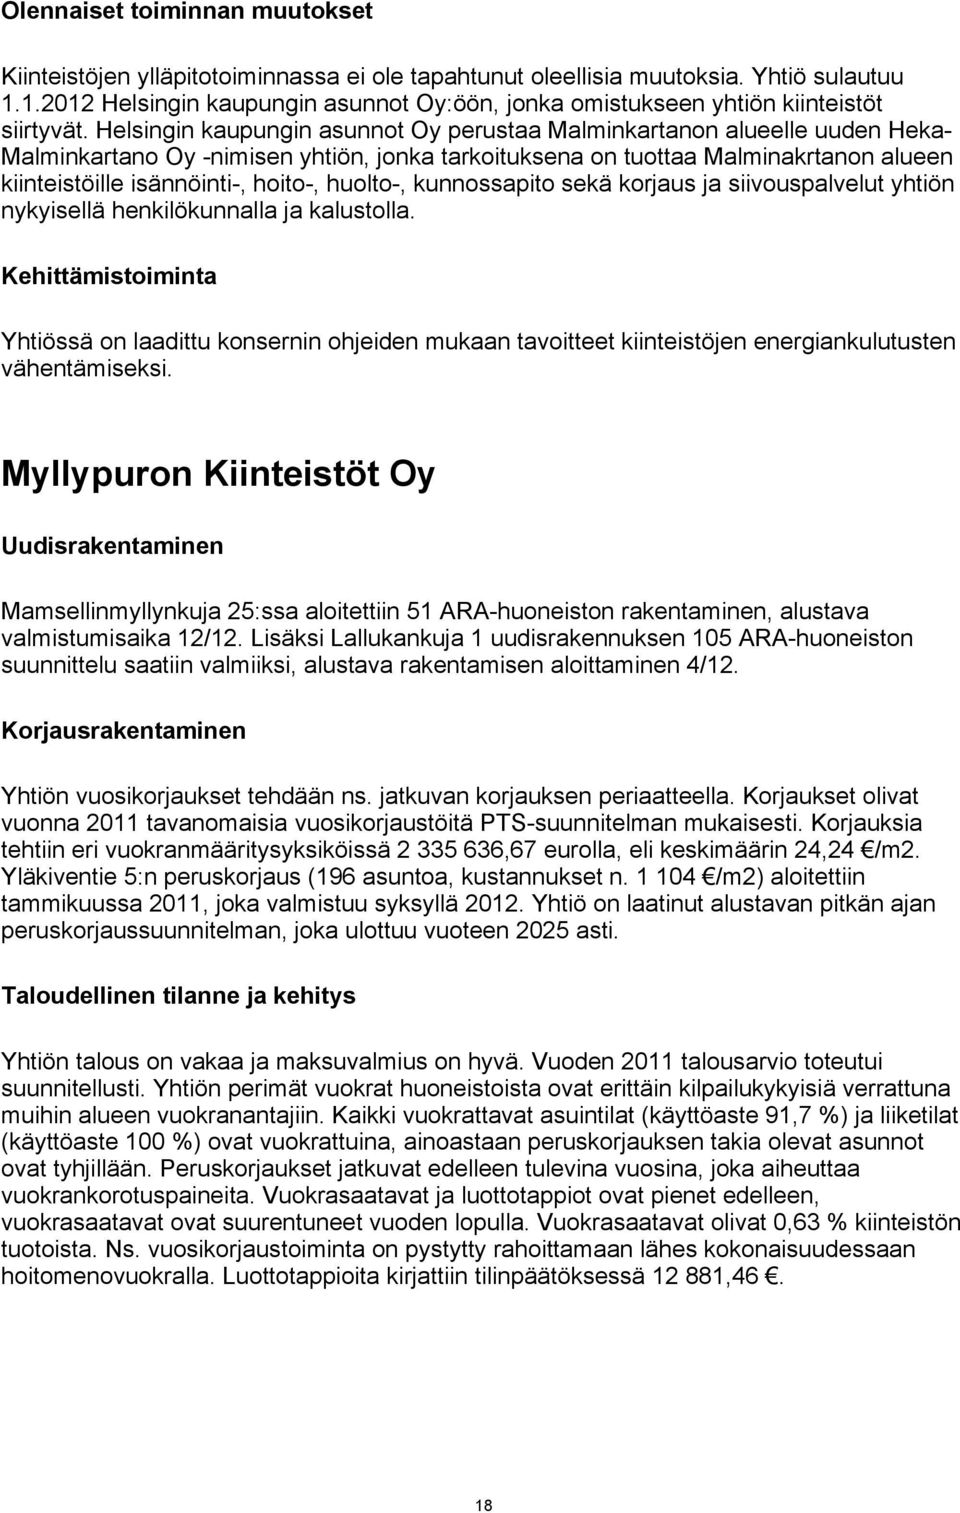 Helsingin kaupungin asunnot Oy perustaa Malminkartanon alueelle uuden Heka- Malminkartano Oy -nimisen yhtiön, jonka tarkoituksena on tuottaa Malminakrtanon alueen kiinteistöille isännöinti-, hoito-,